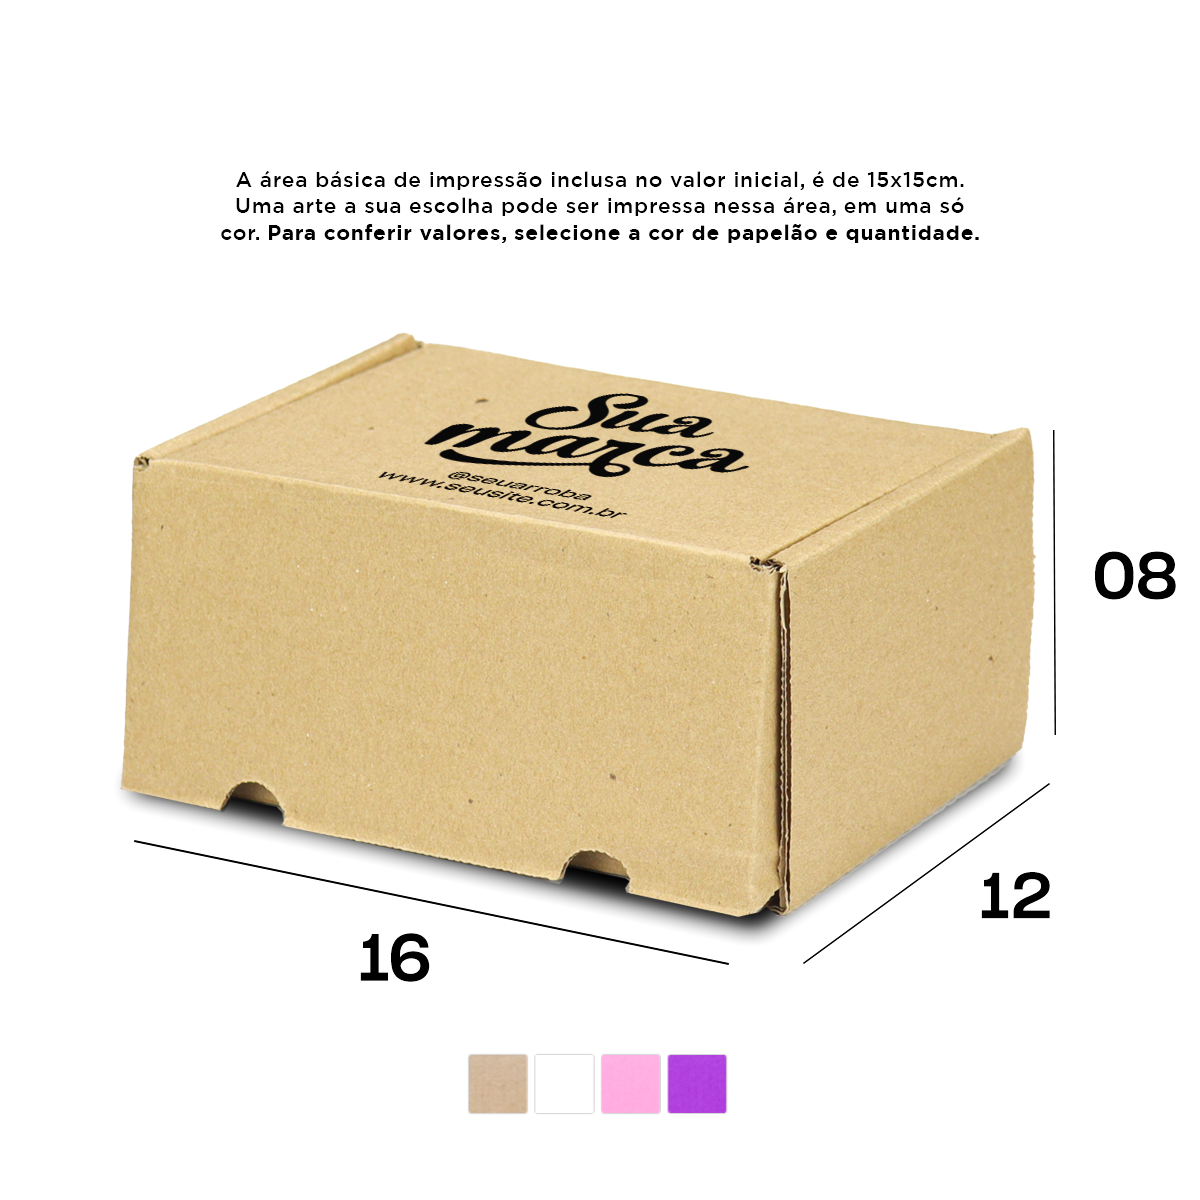 Caixa de Papelão Personalizada (16x12x08) Sedex 01